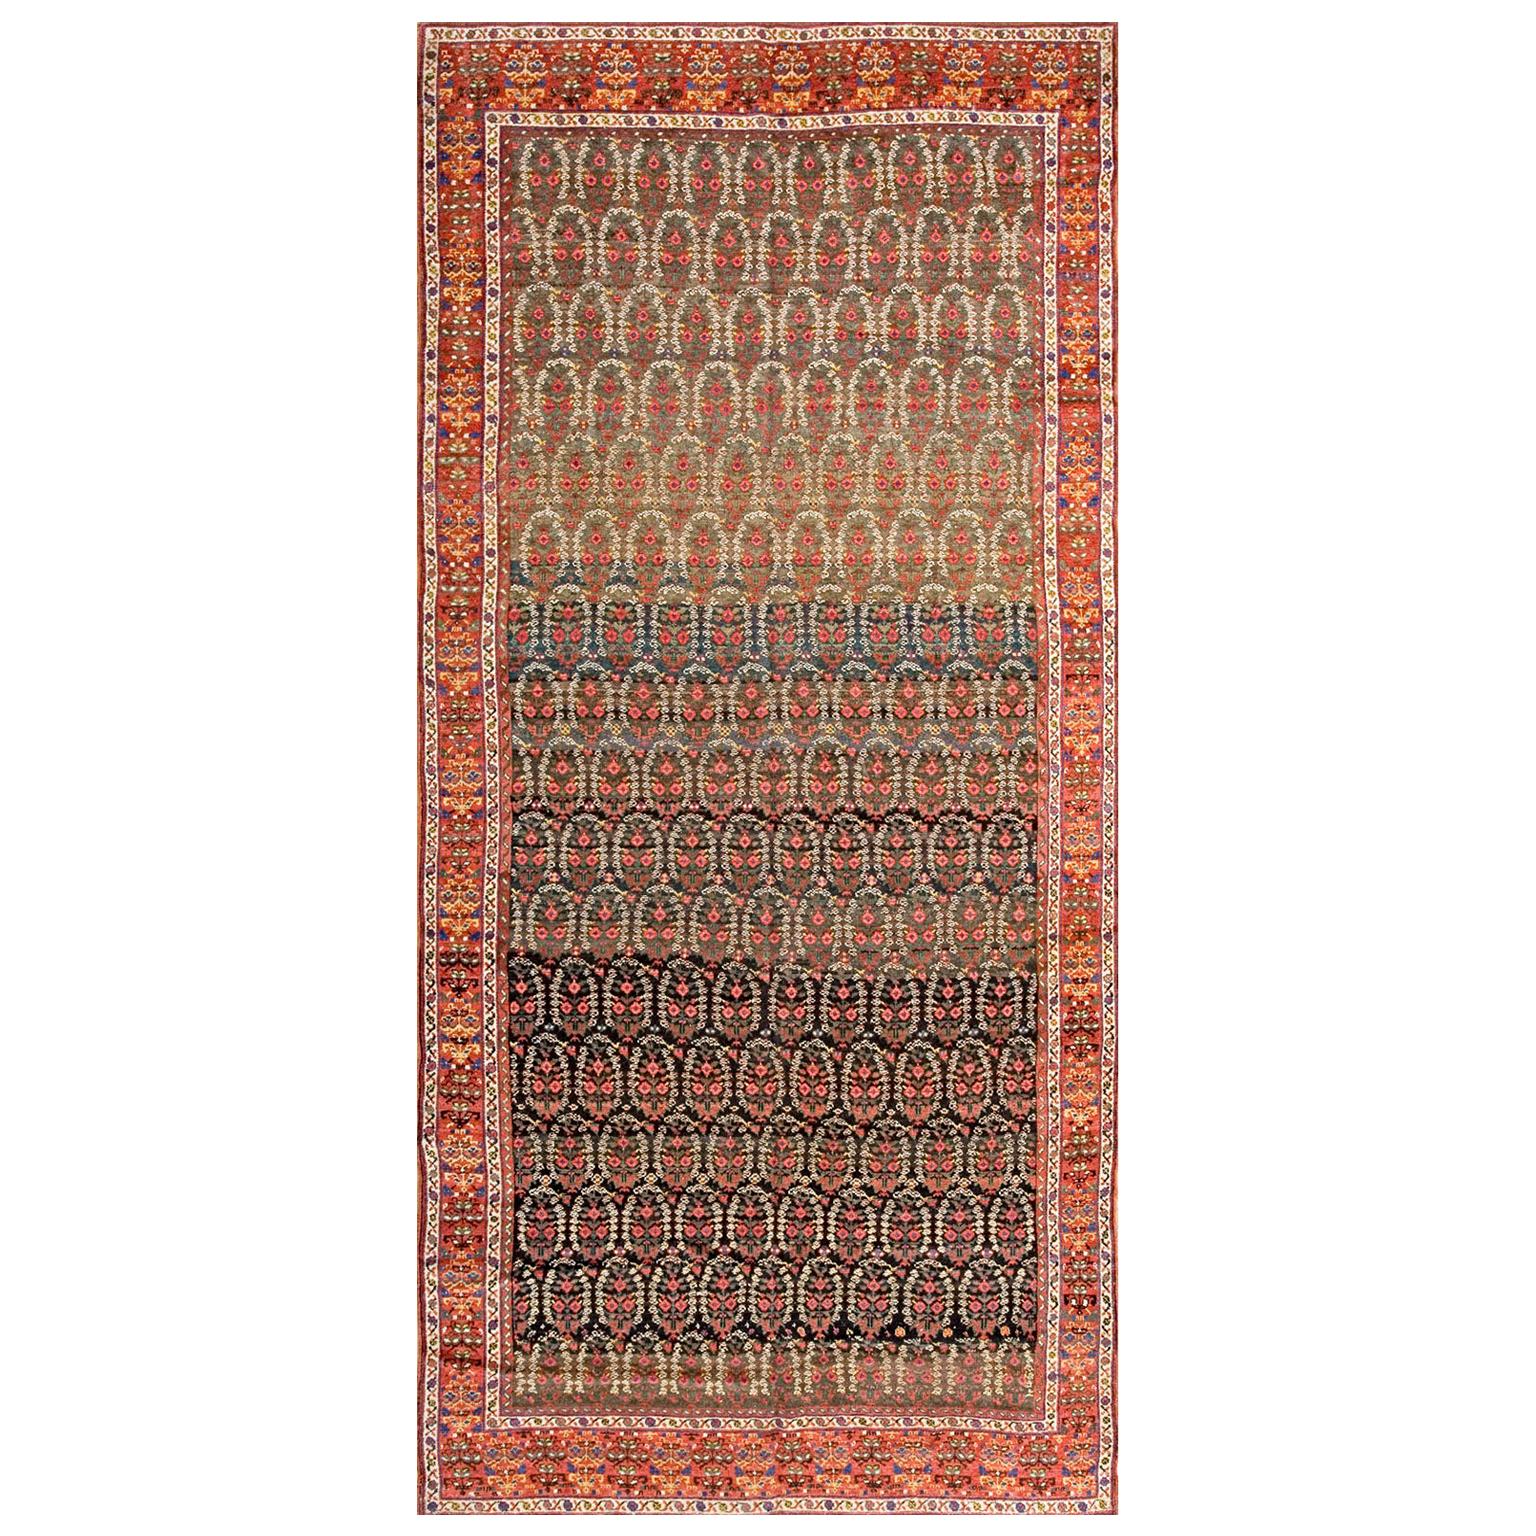 Mitte des 19. Jahrhunderts N.W. Persischer Teppich ( 6' x 13' - 183 x 396)